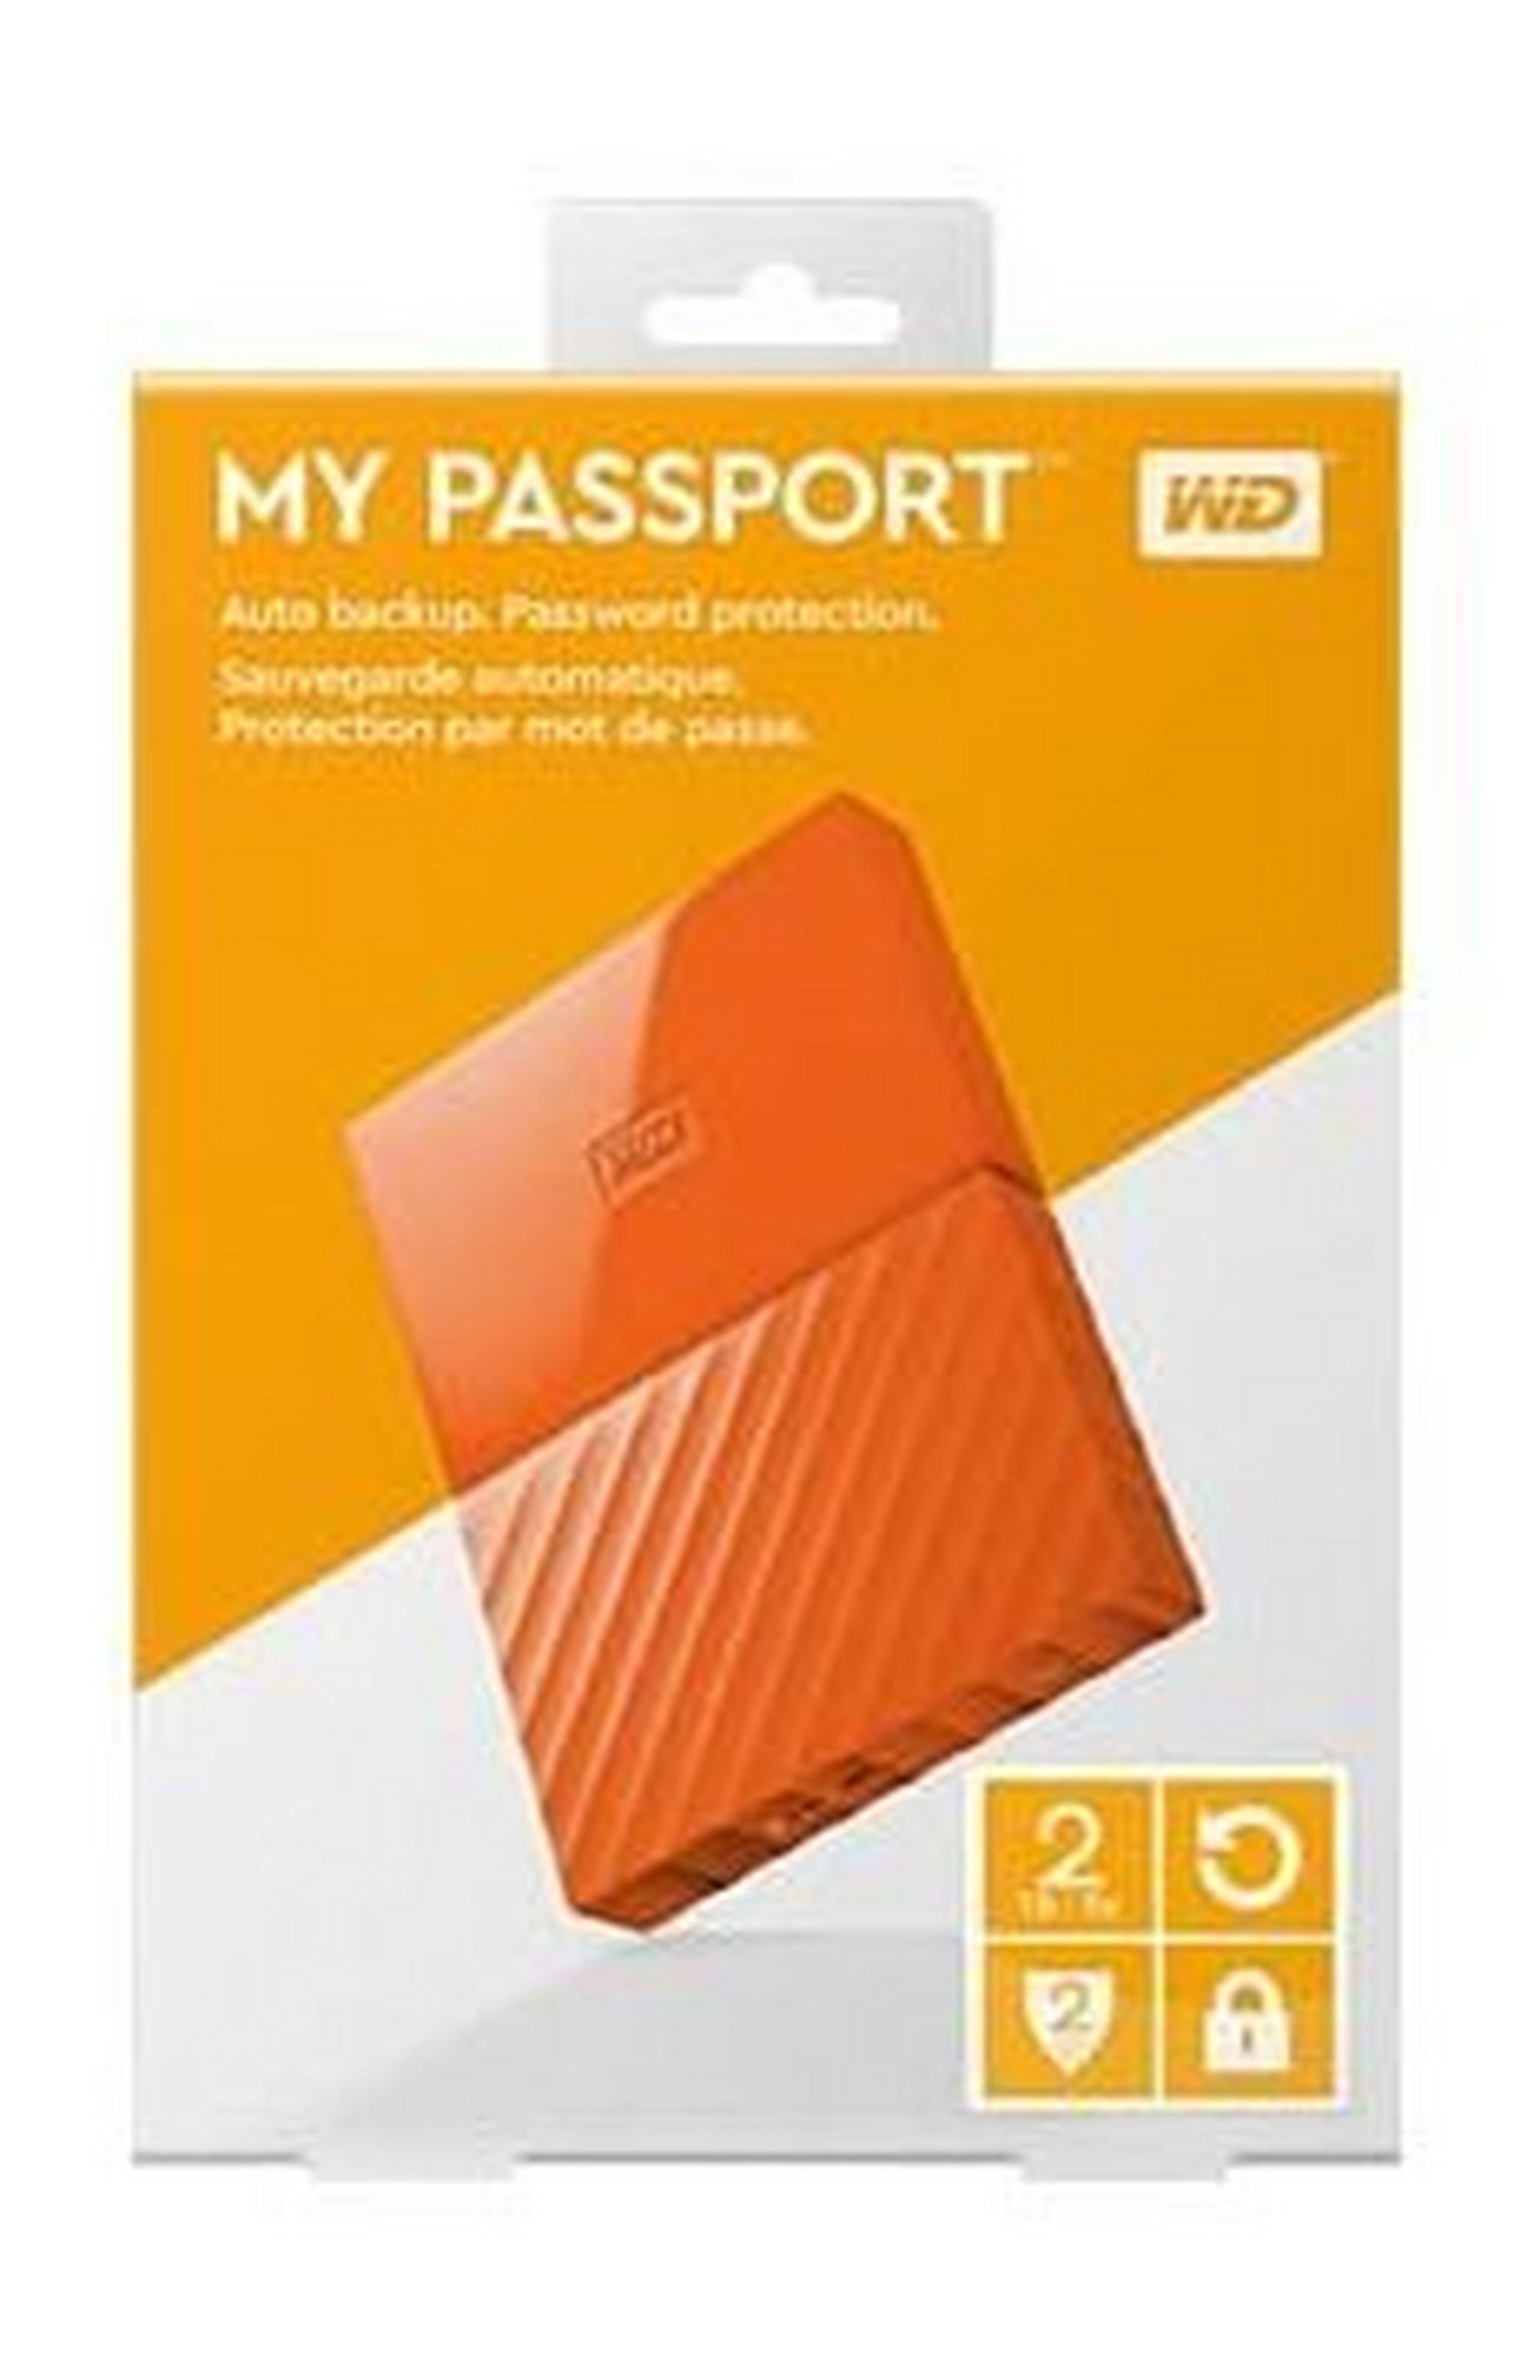 WD 2TB My Passport USB 3.0 External Hard Drive - Orange